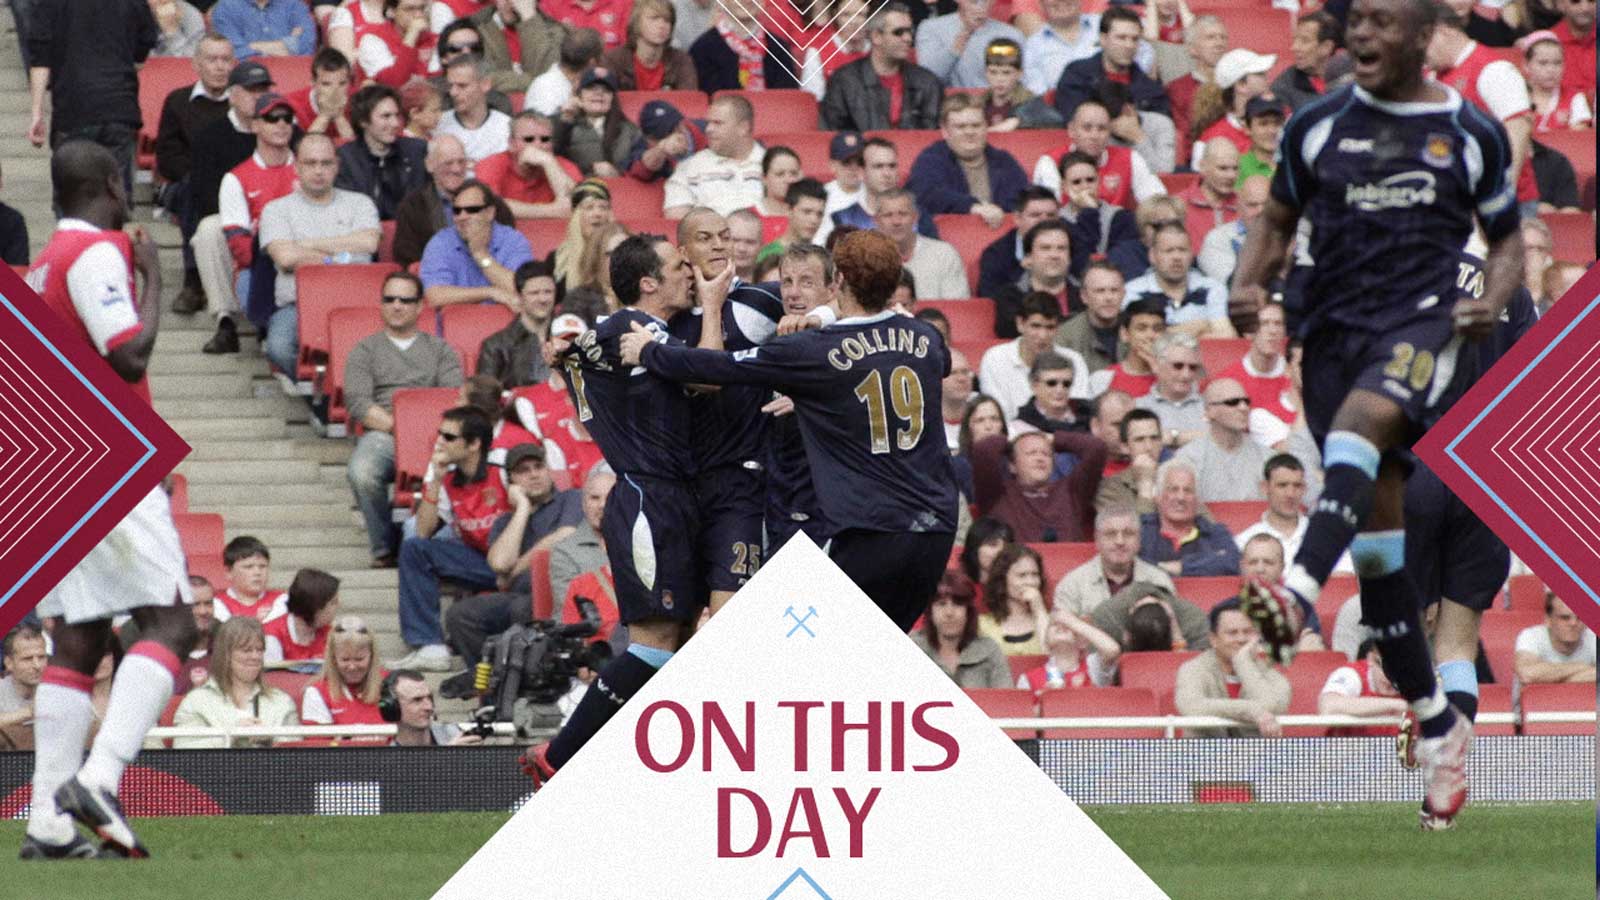 The Hammers celebrate Bobby Zamora's goal at Arsenal in April 2007